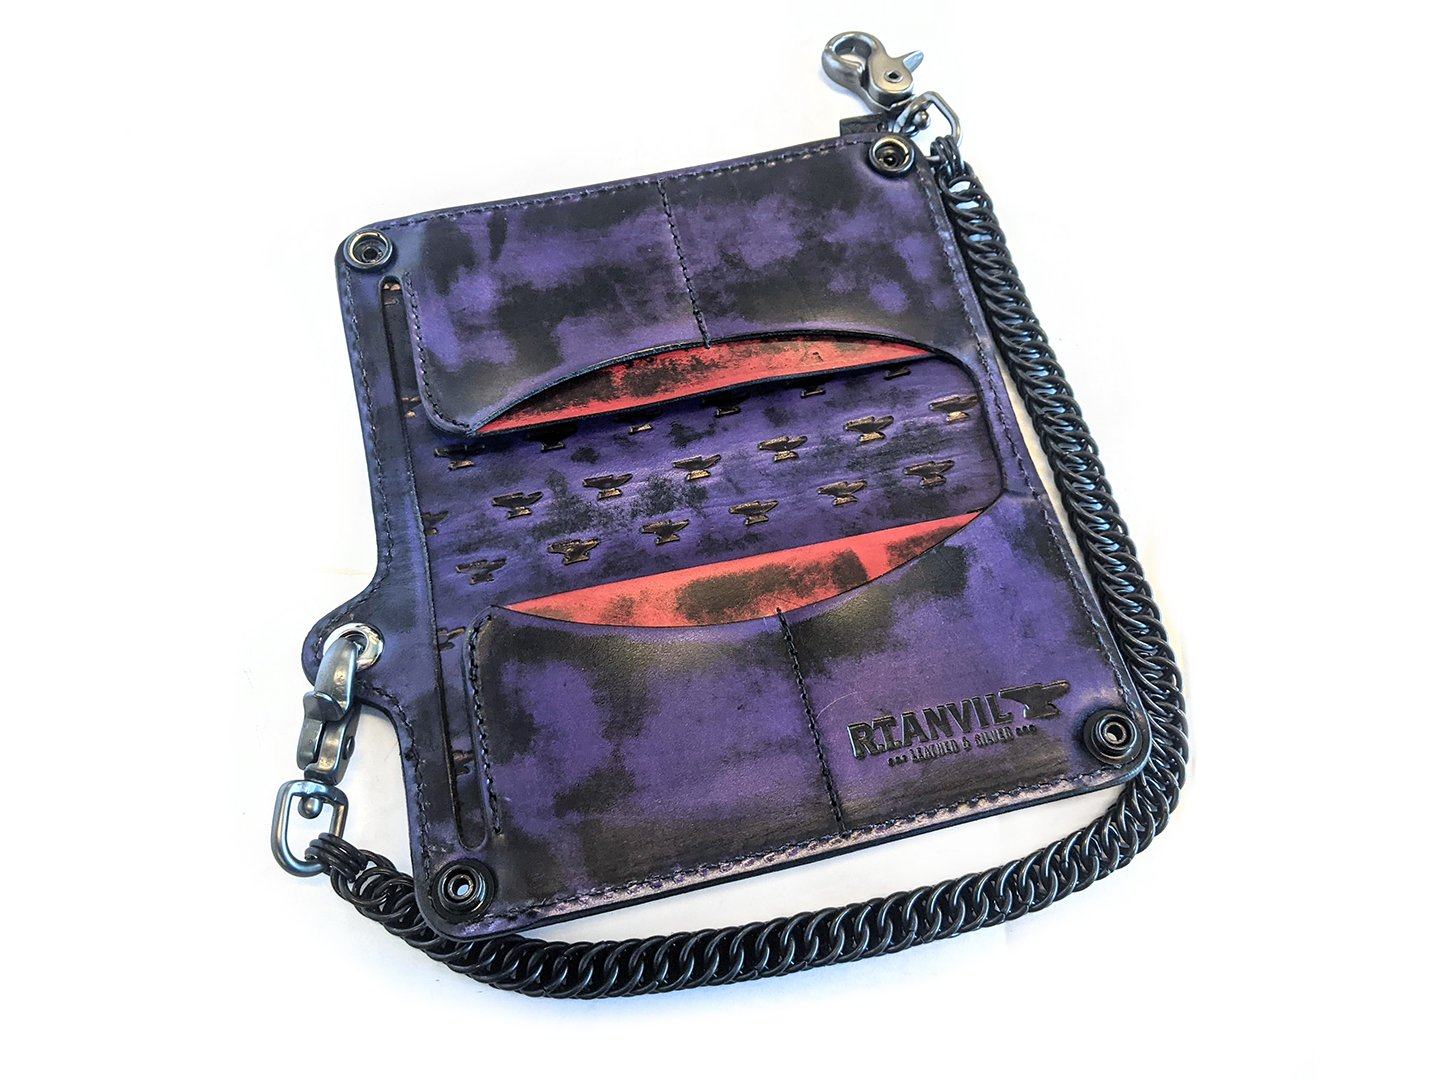 Leather biker trucker wallet leather chain men Black Red long wallet